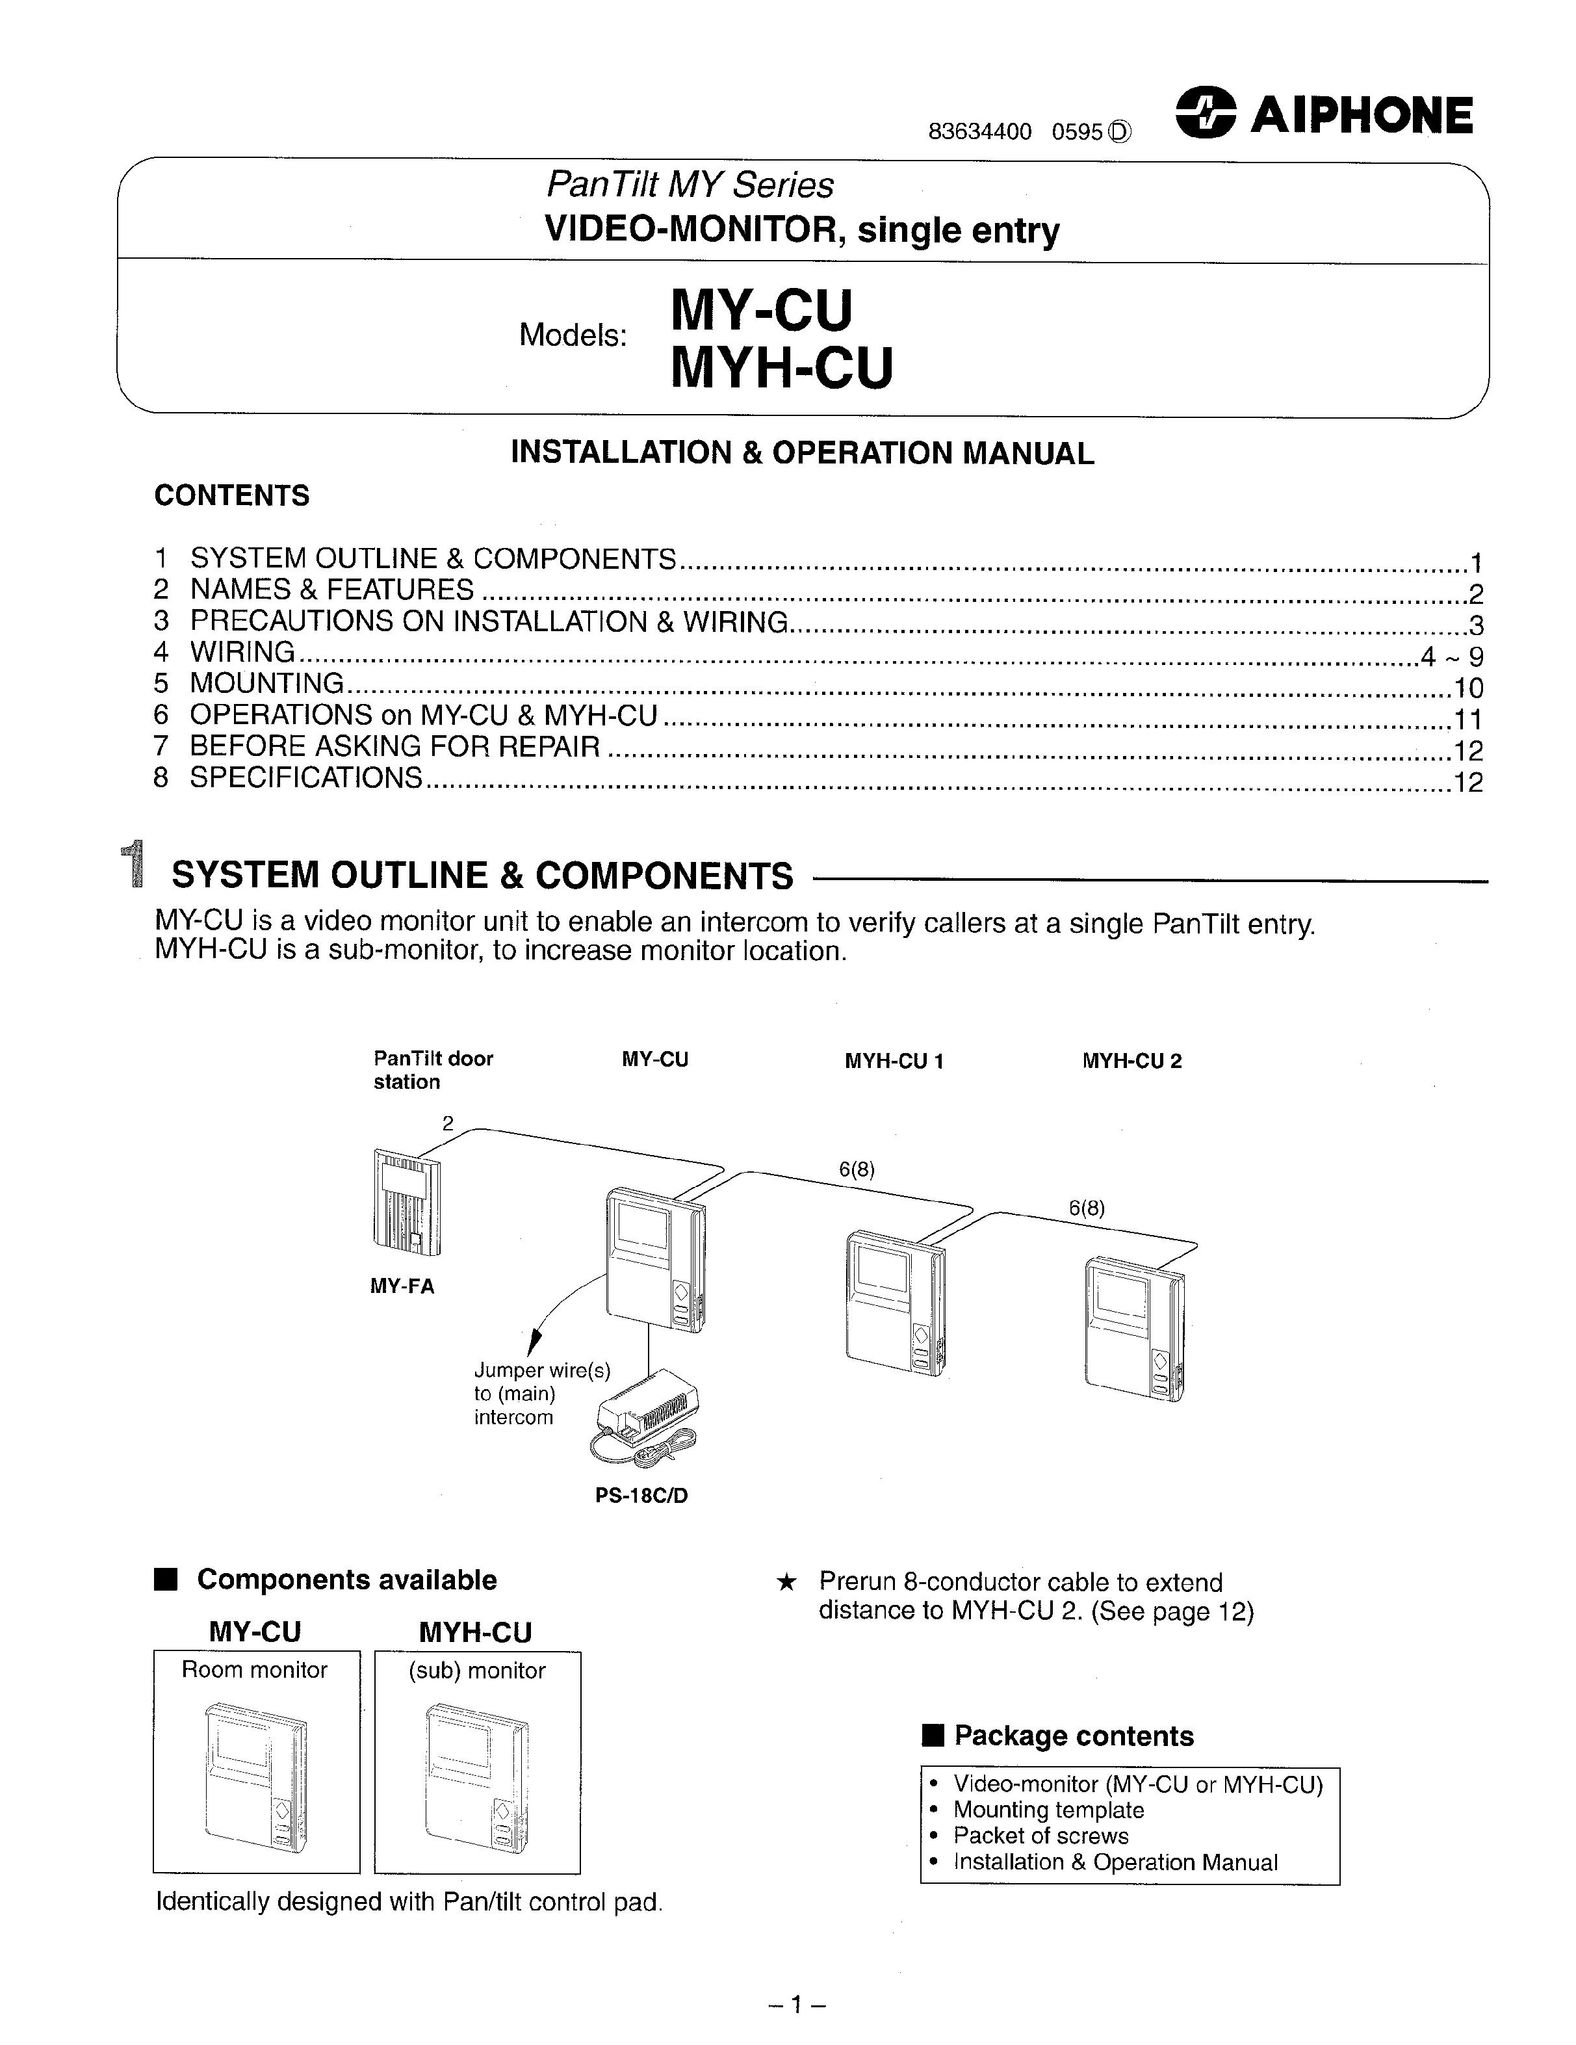 Aiphone MY-CU Car Video System User Manual